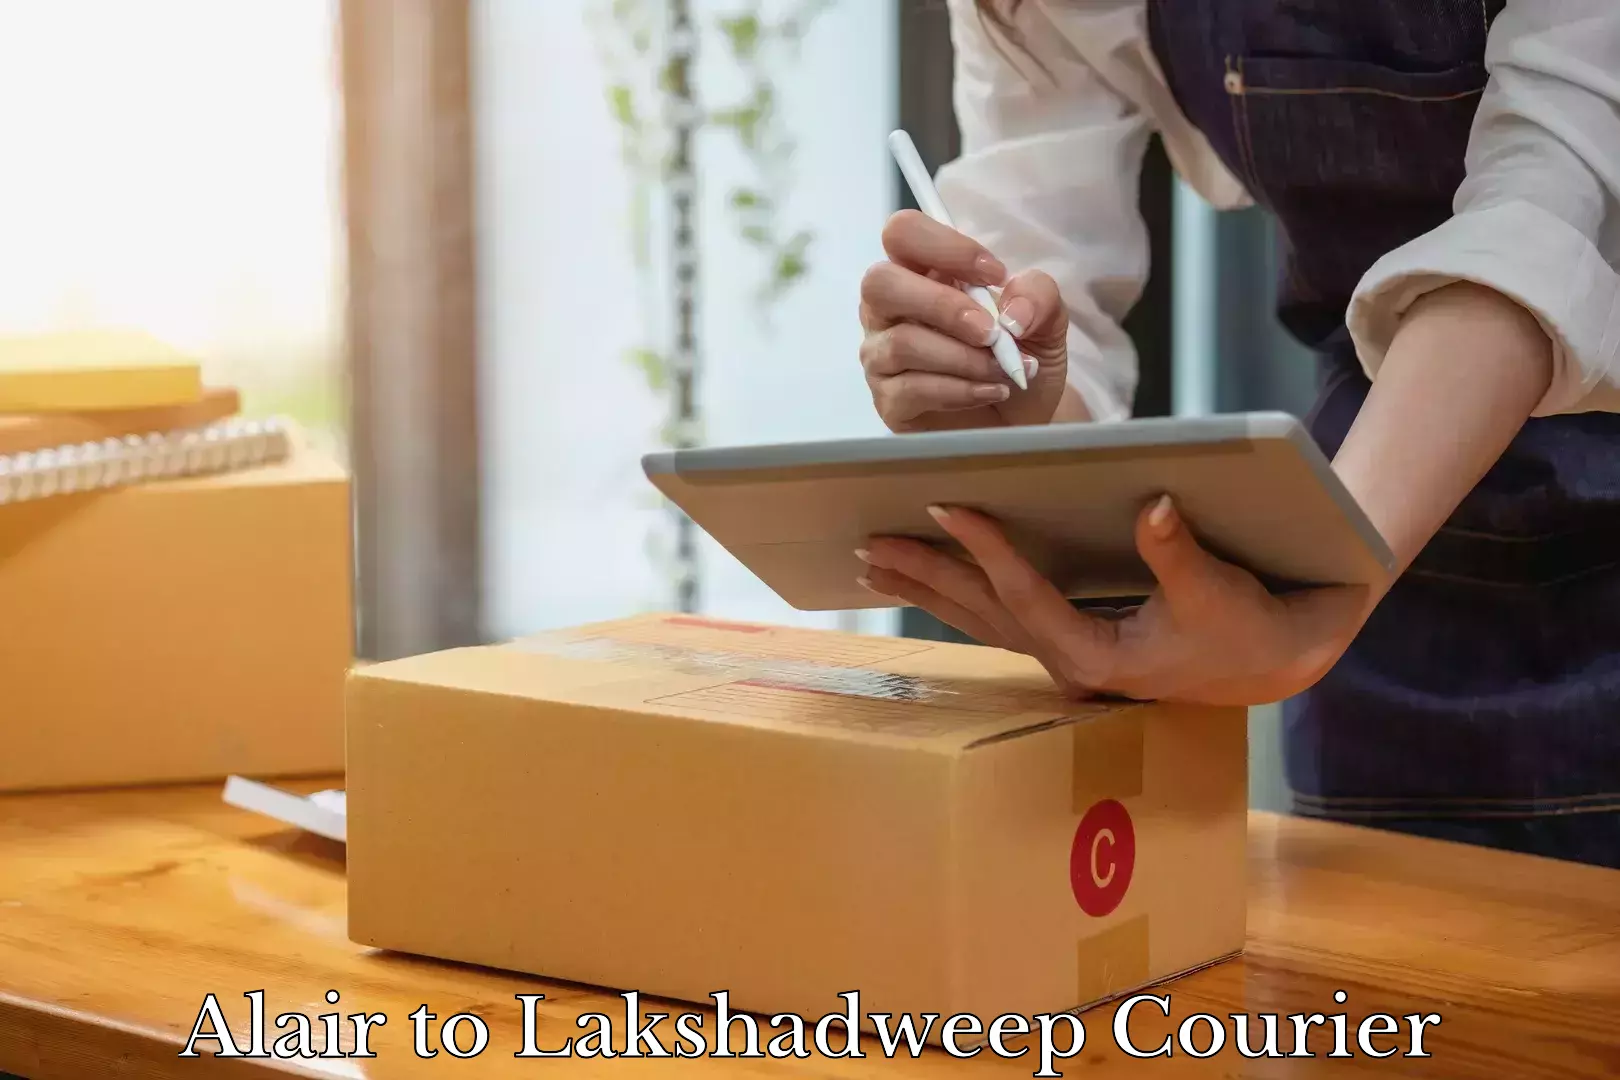 Luggage delivery app Alair to Lakshadweep